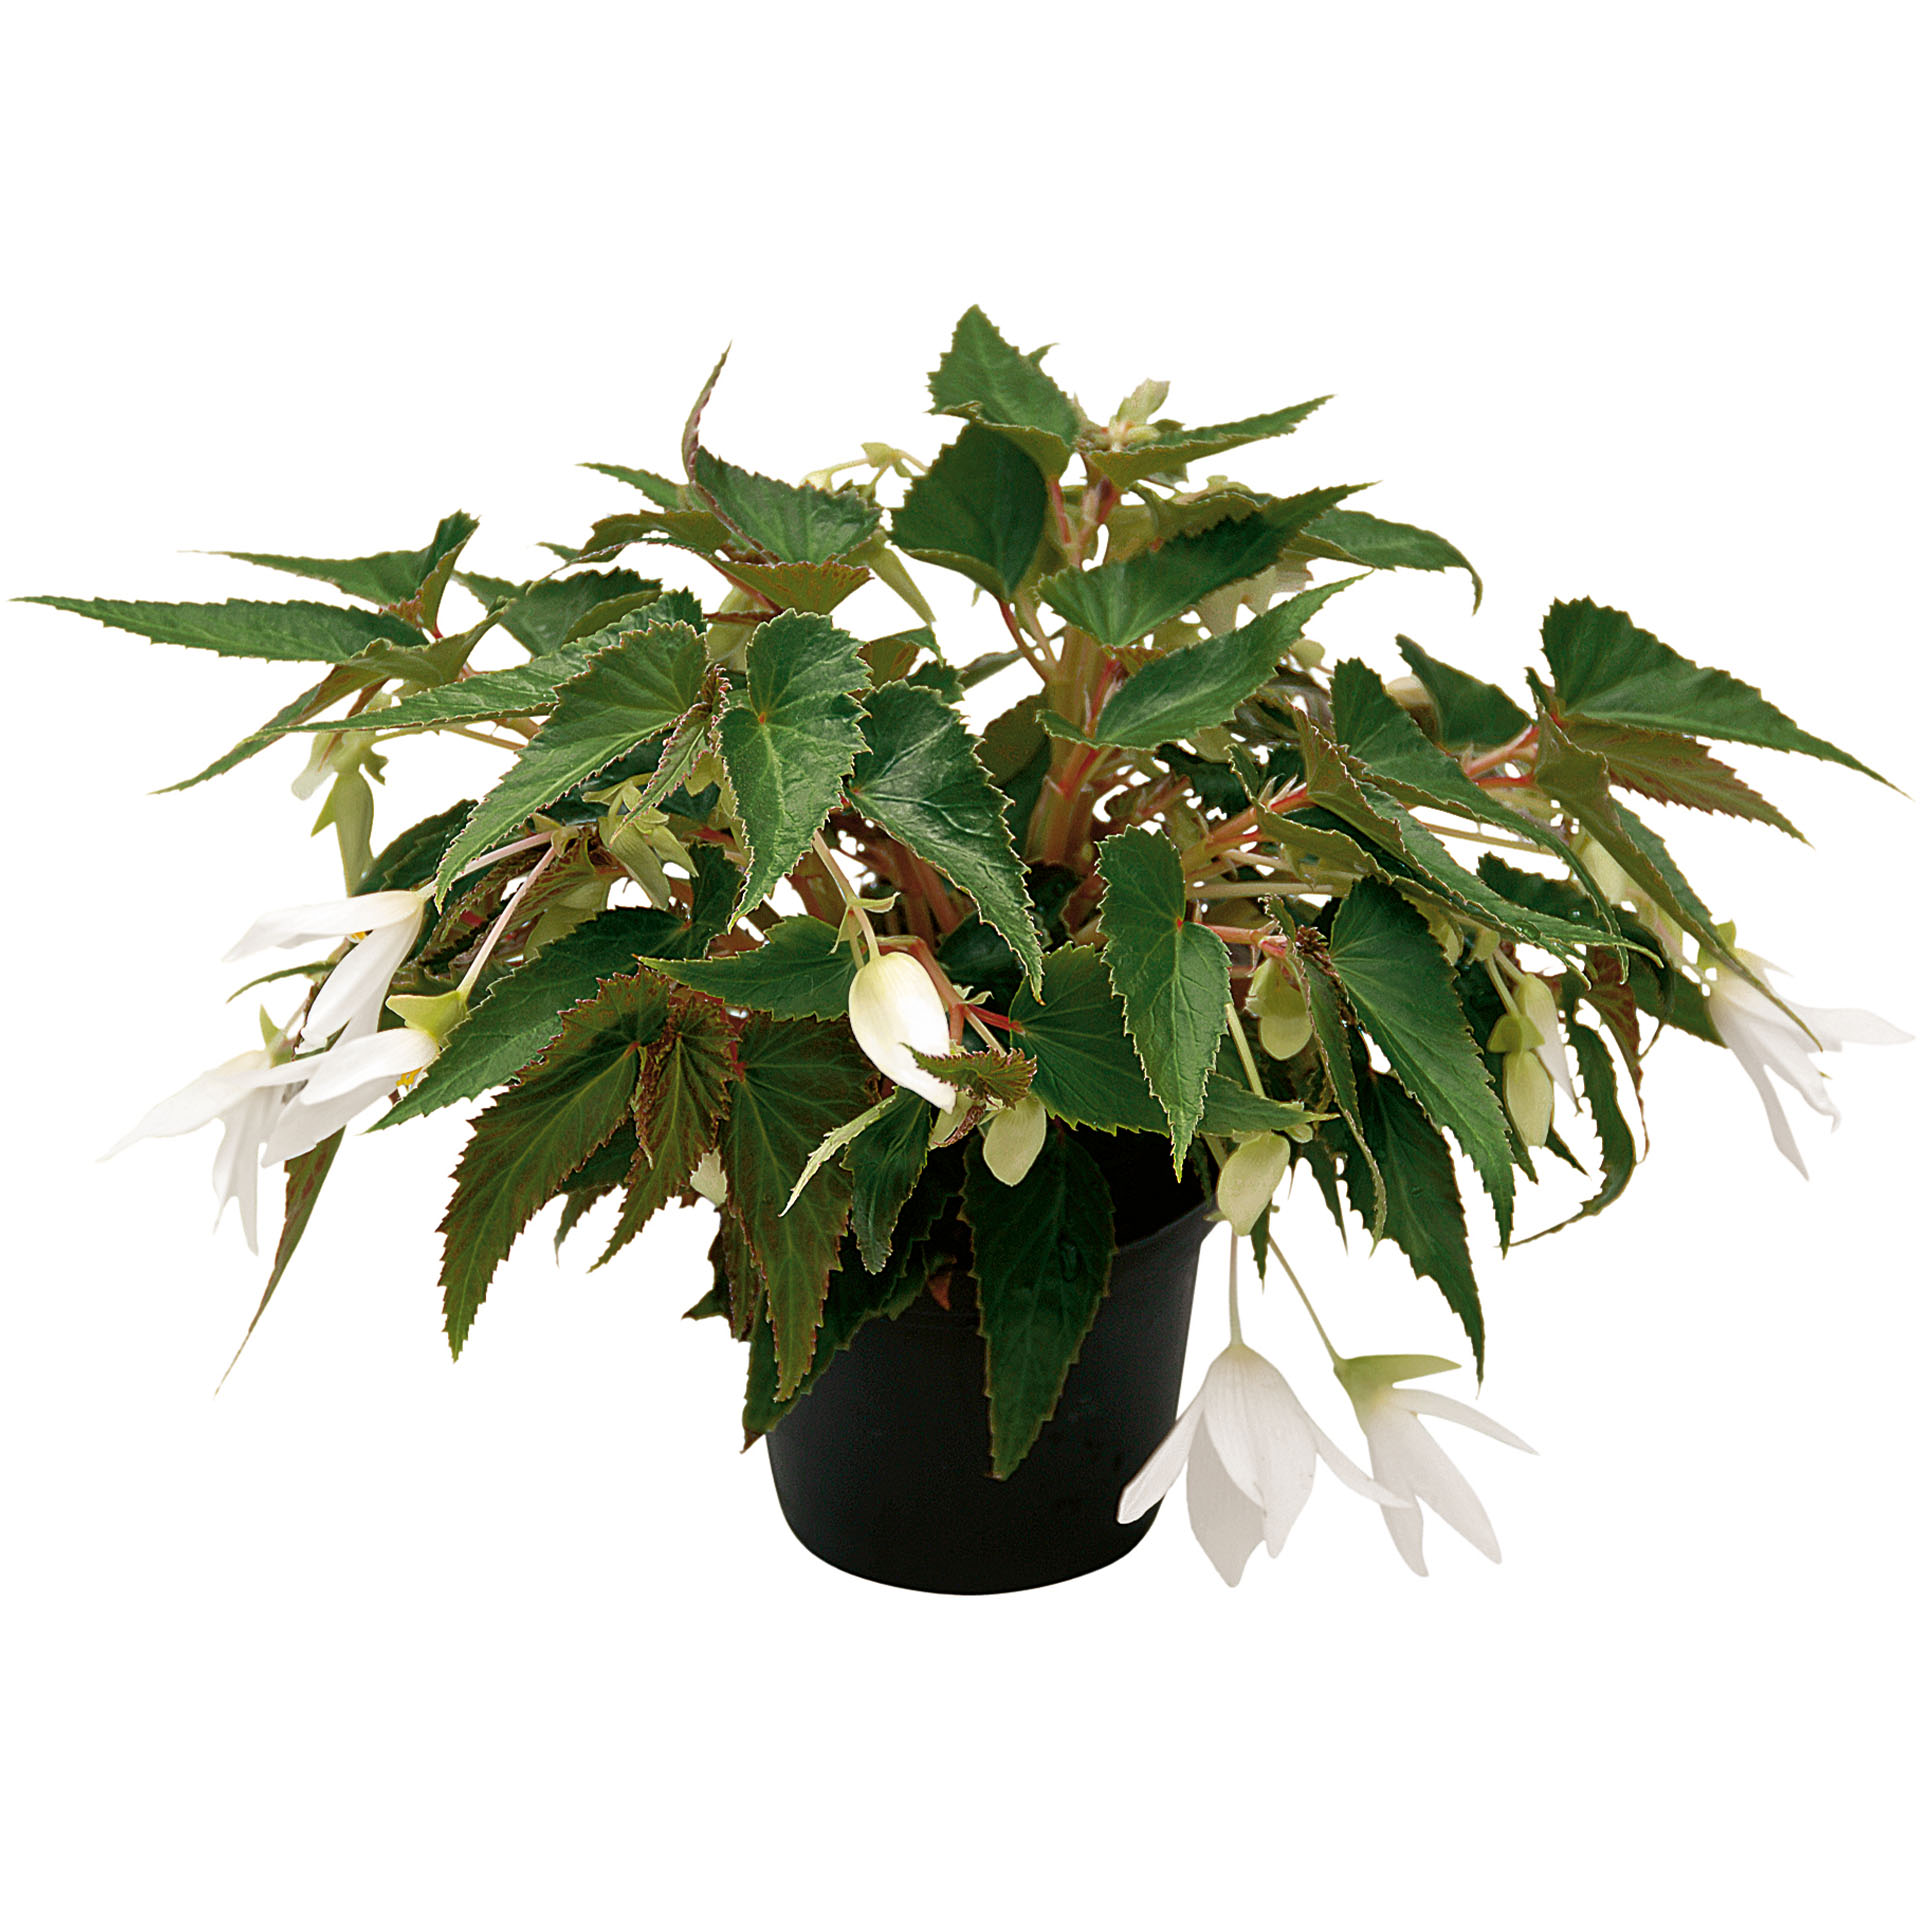 Hängebegonie - Begonia 'Summerwings White', 12cm Topf